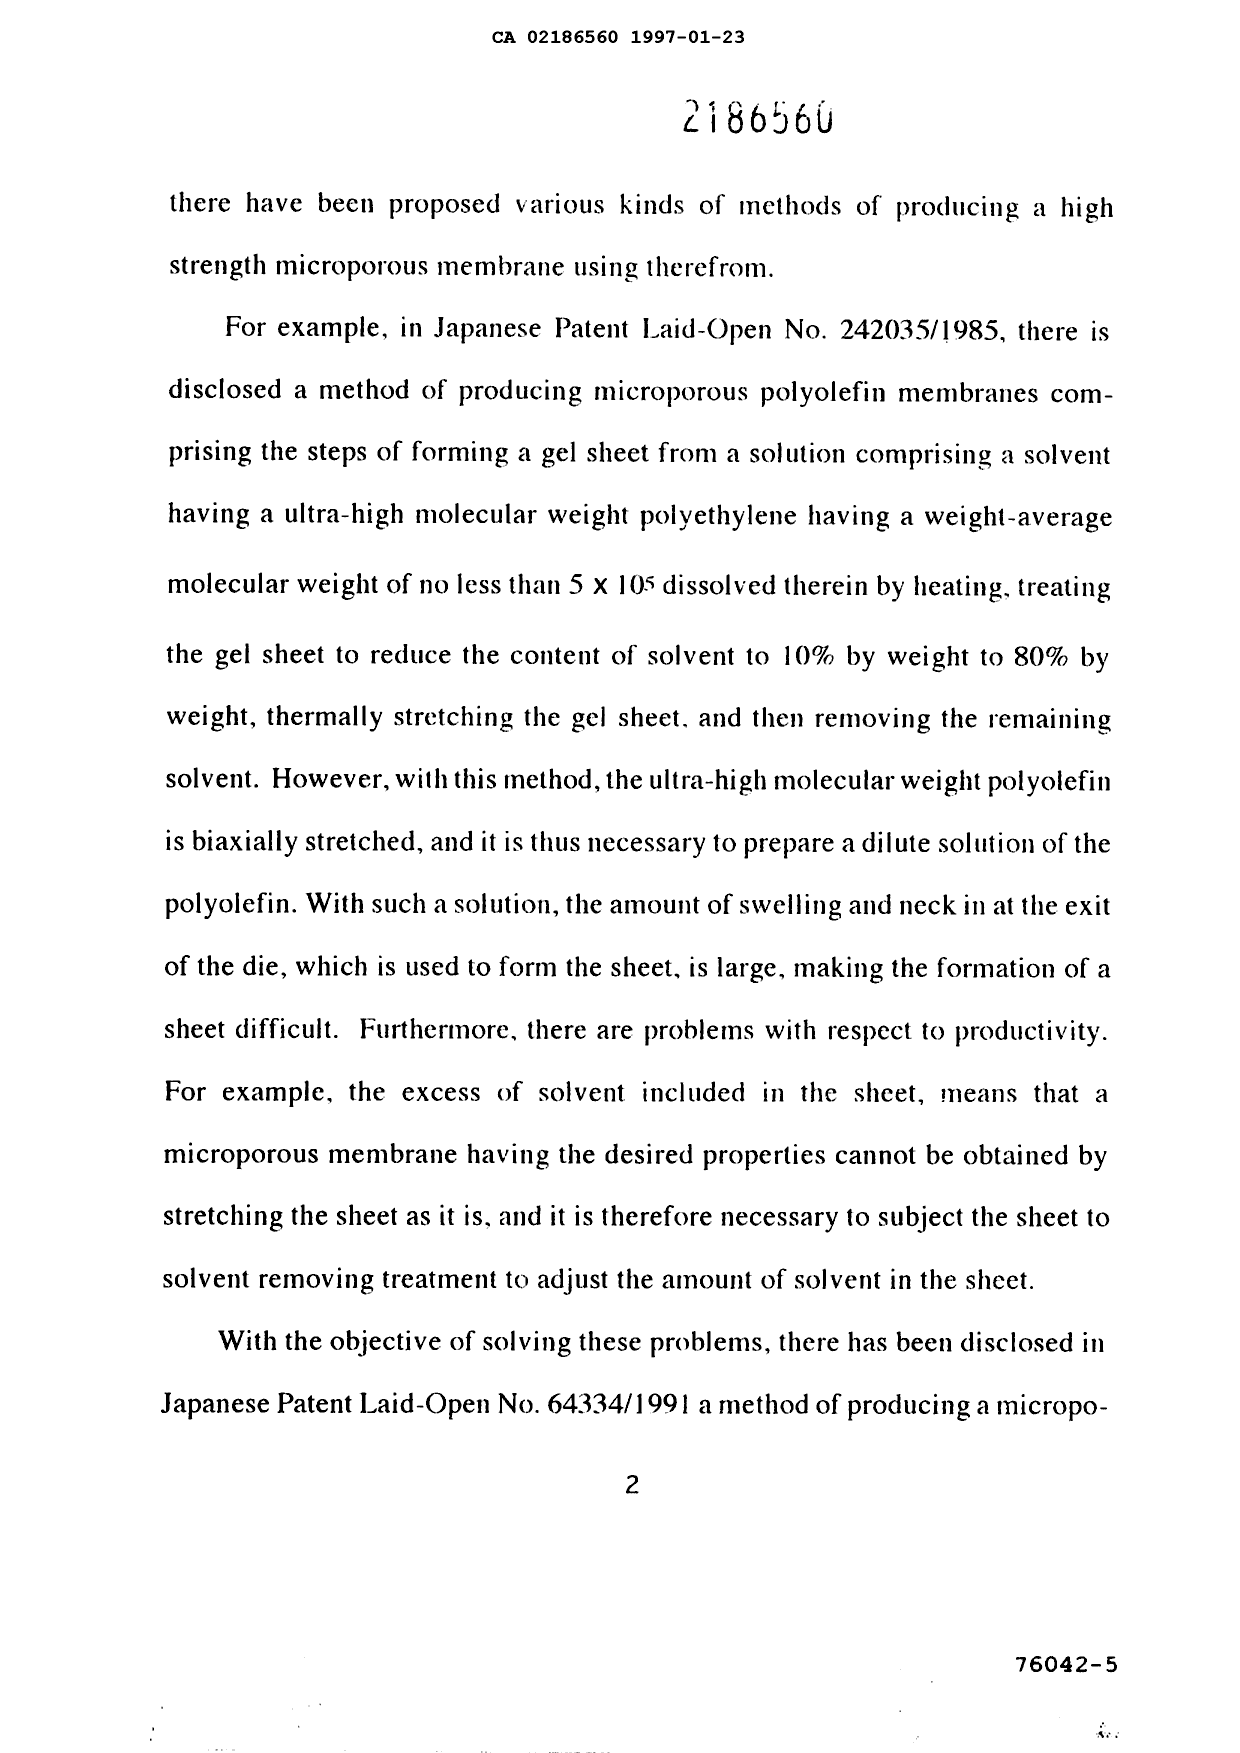 Canadian Patent Document 2186560. Description 19970123. Image 2 of 17